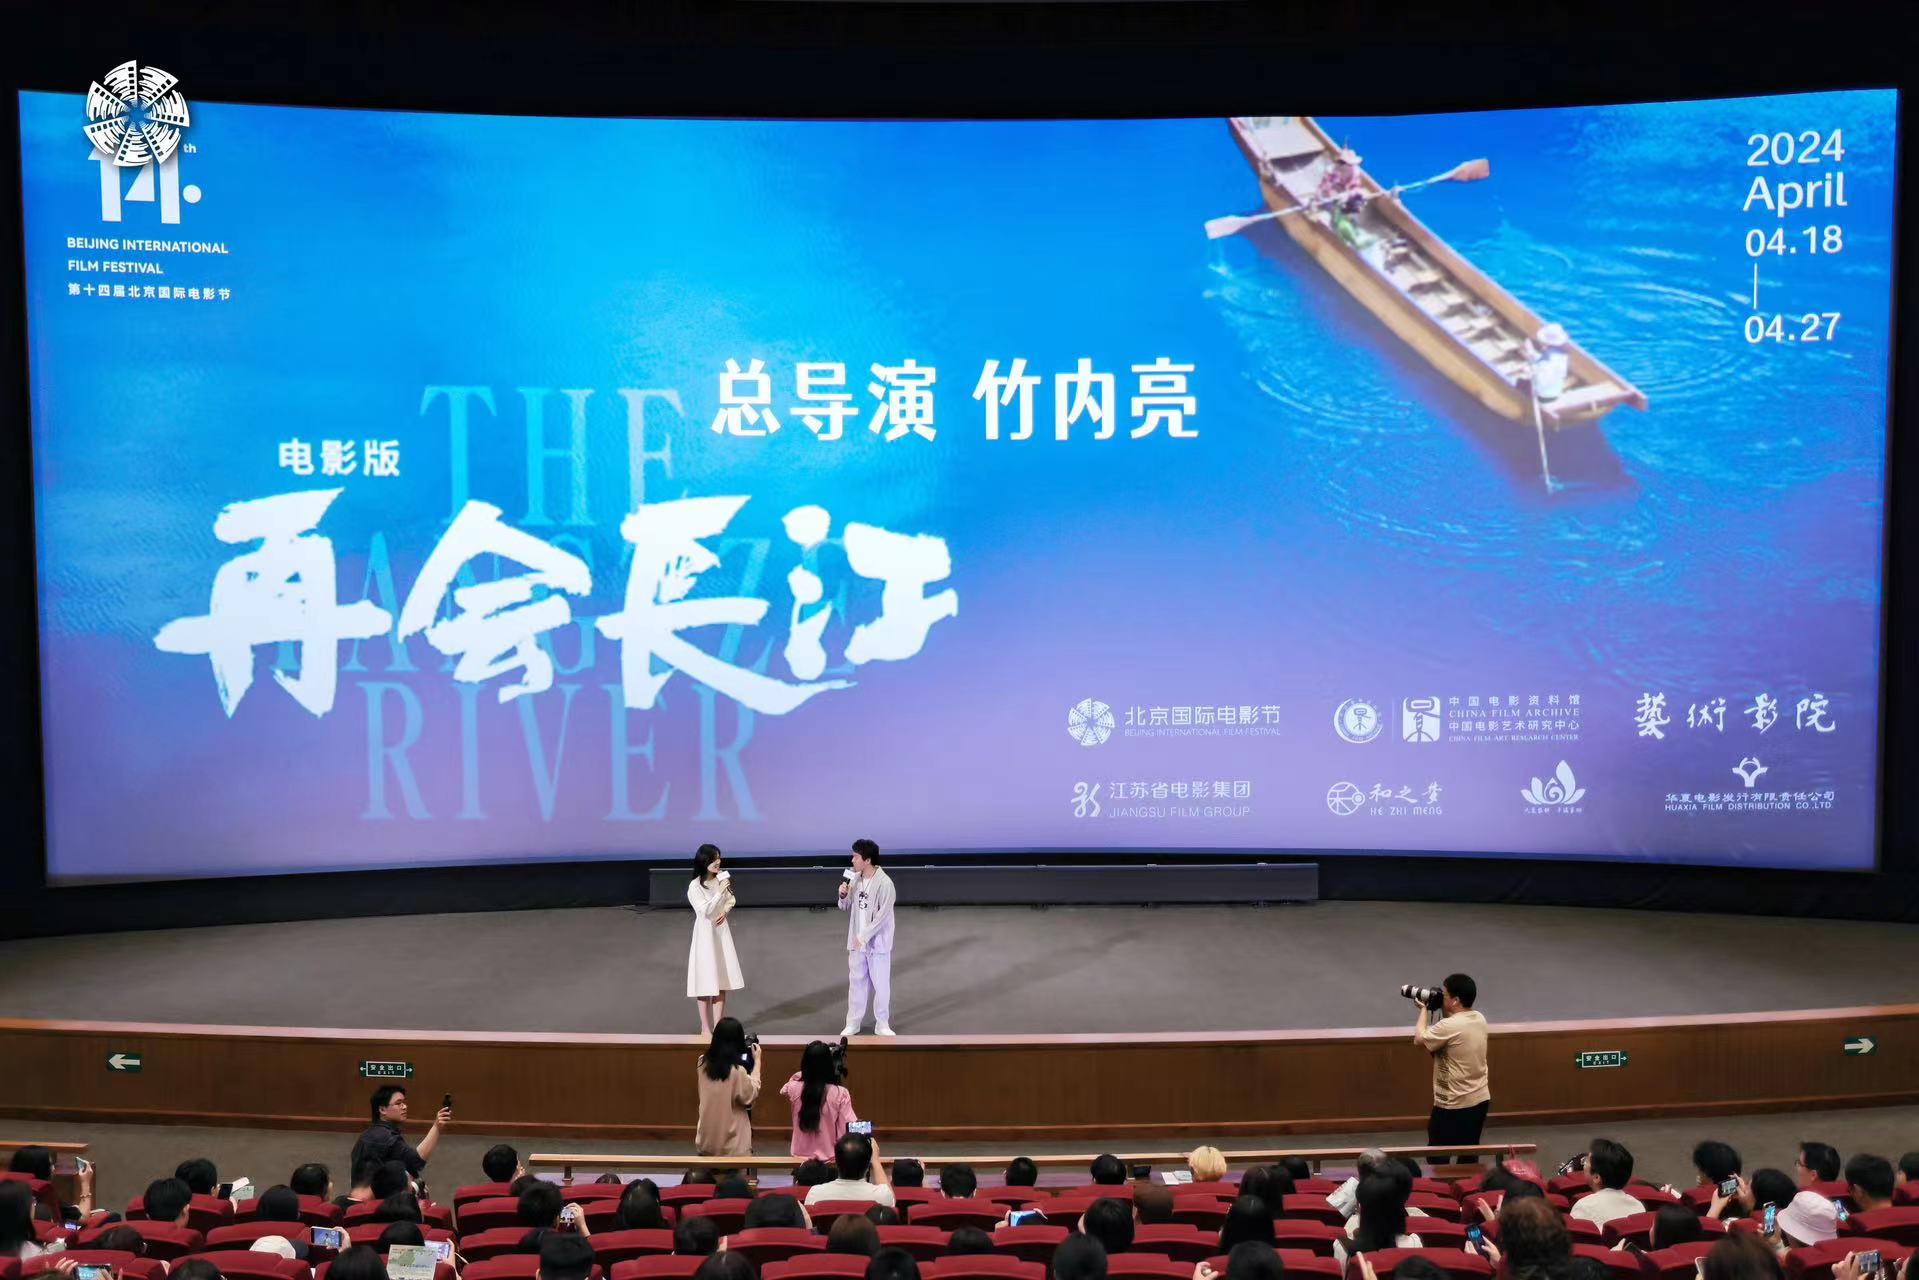 紀錄電影《再會長江》亮相北京國際電影節 展現長江十年巨變